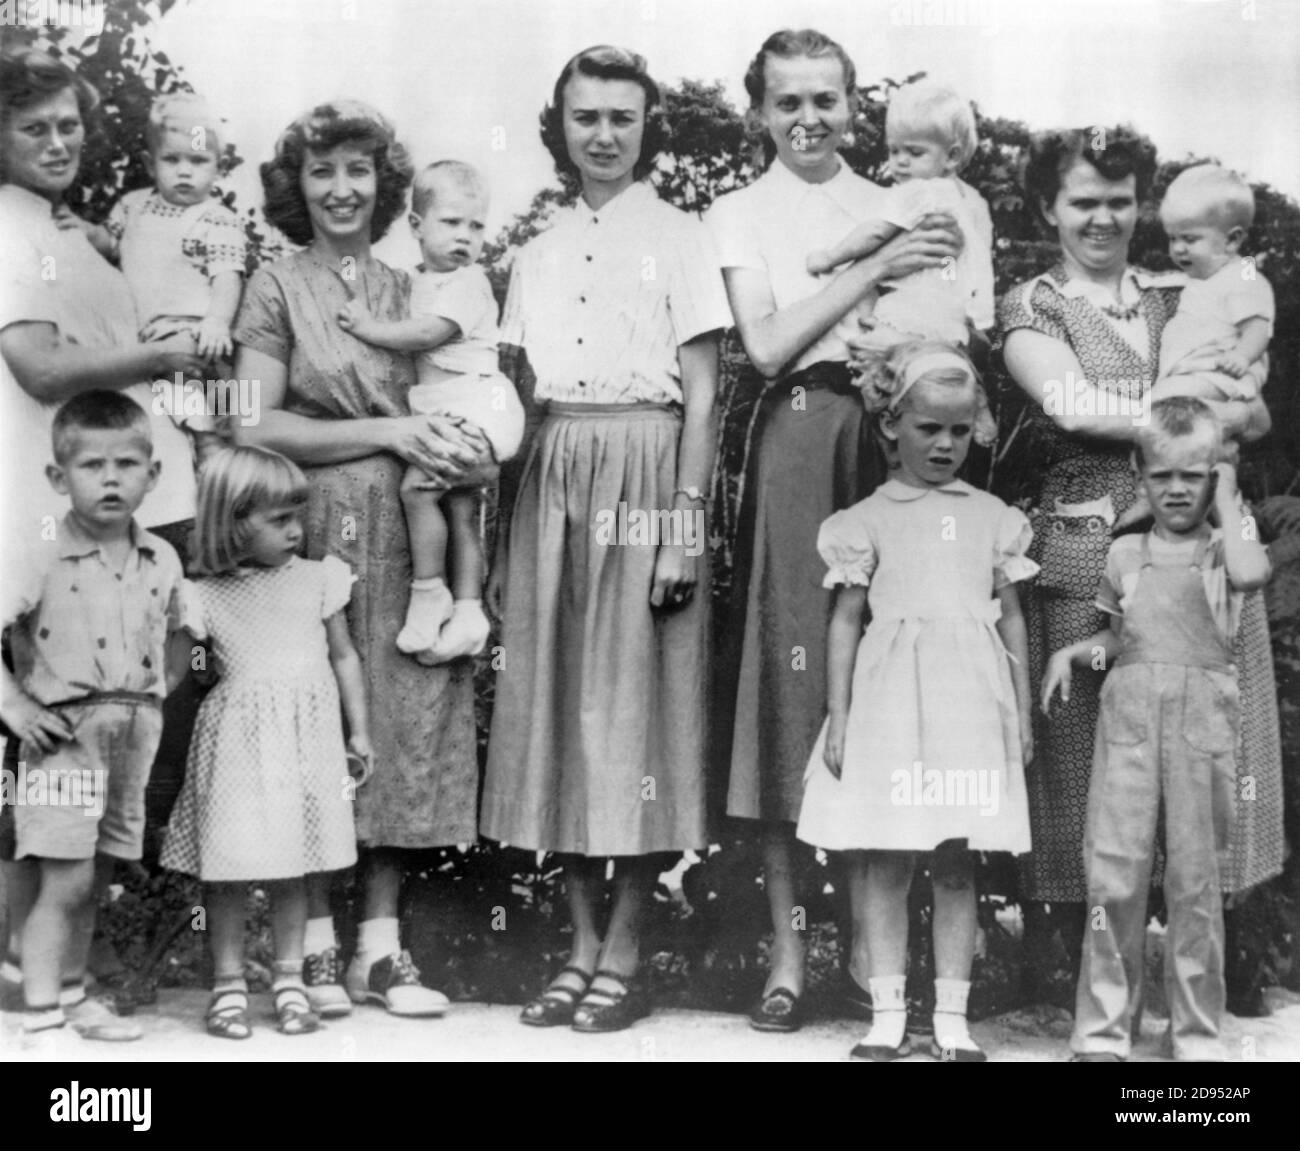 Die Frauen und Kinder von fünf evangelisch-christlichen Missionaren wurden am 8. Januar 1956 von Auca (Huaorani)-Indianern im Regenwald Ecuadors getötet. Frauen abgebildet (l bis r) sind Marilu McCullie, Barbara Youderian, Olive Fleming, Elizabeth Elliot, und Marjorie Saint. Stockfoto